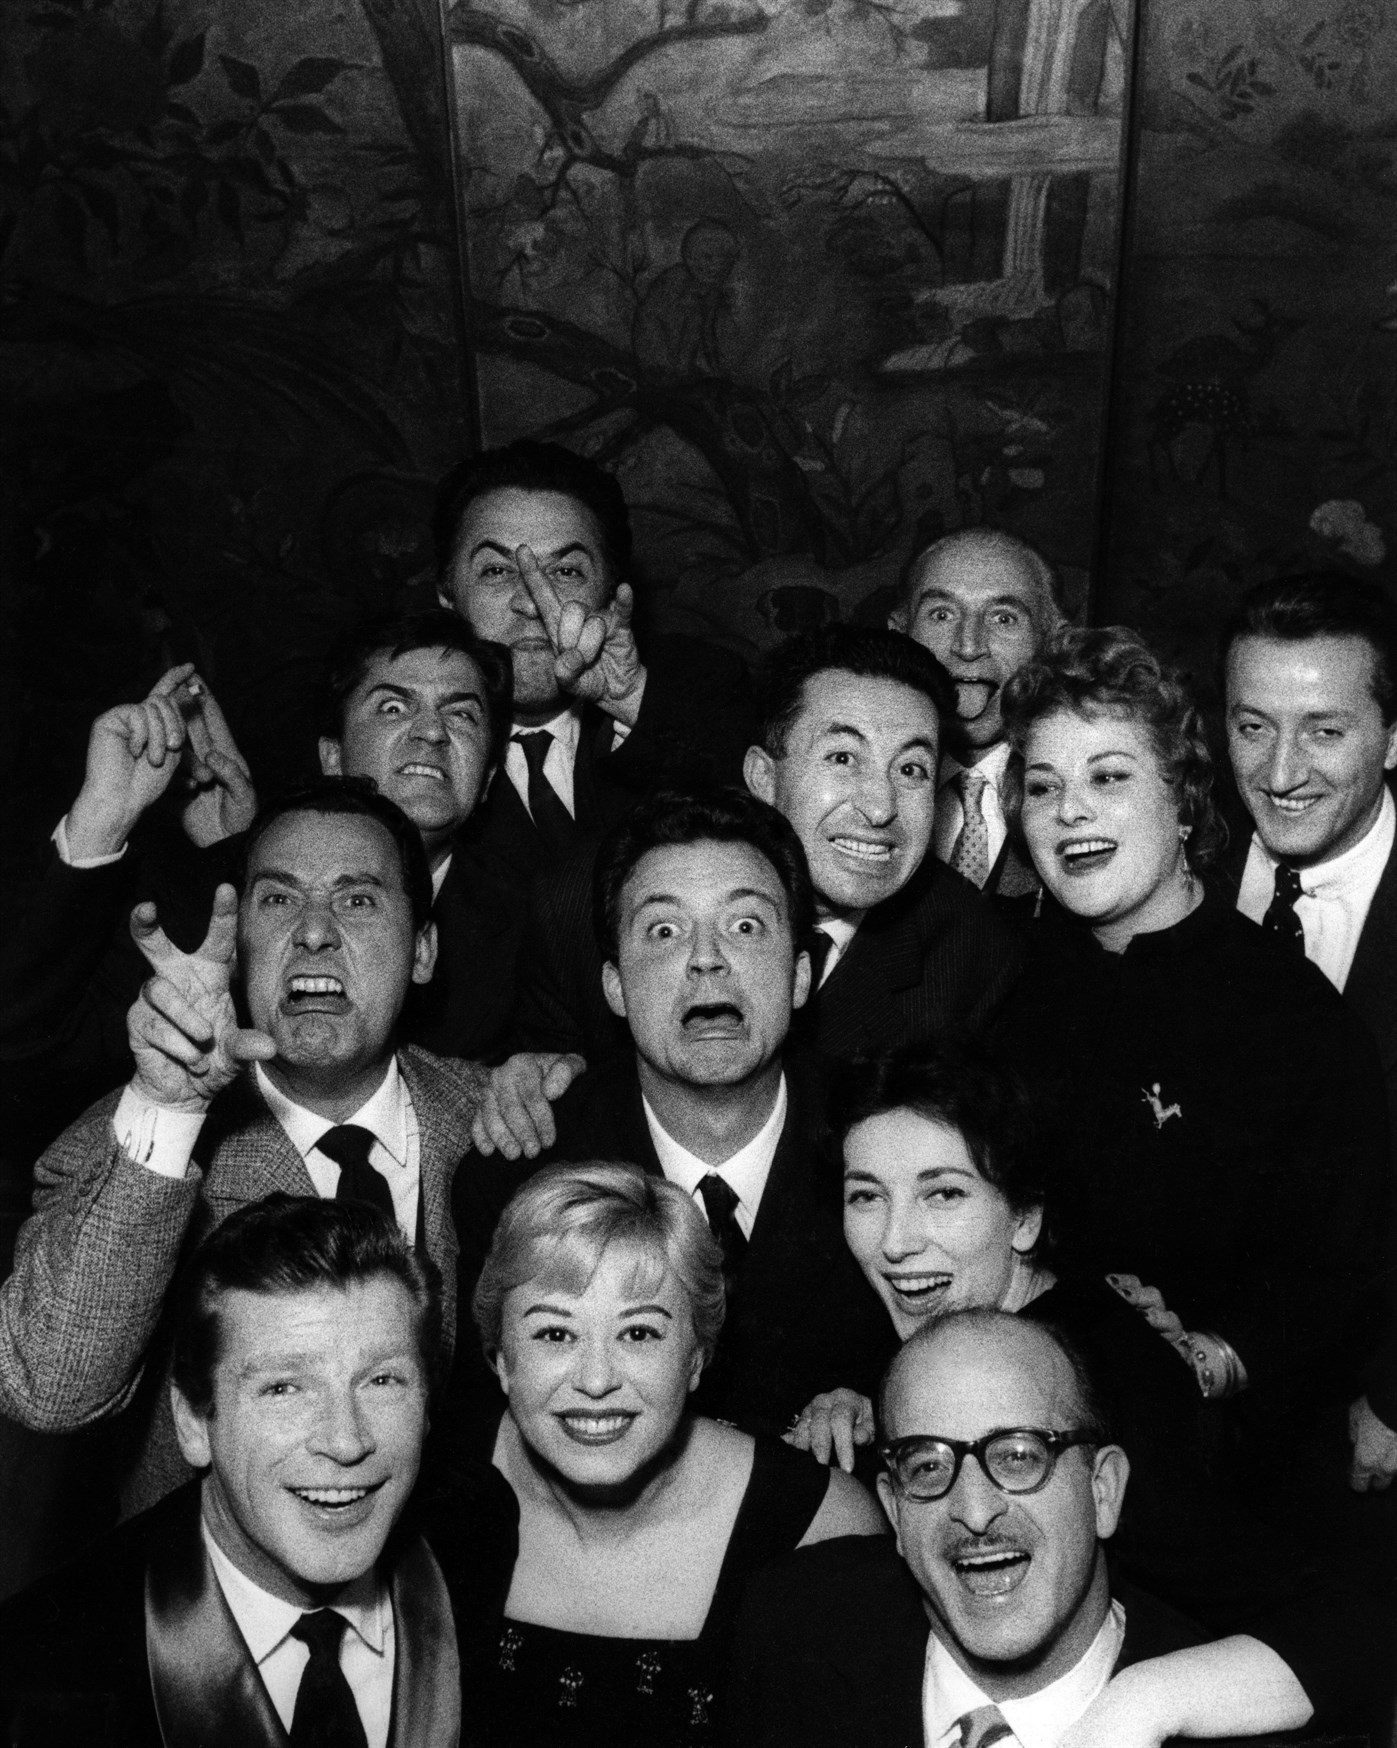 Federico Fellini, Aldo Tonti, Valentina Cortese, Franco Interlenghi, Franca Marzi, Giulietta Masina and Alberto Sordi